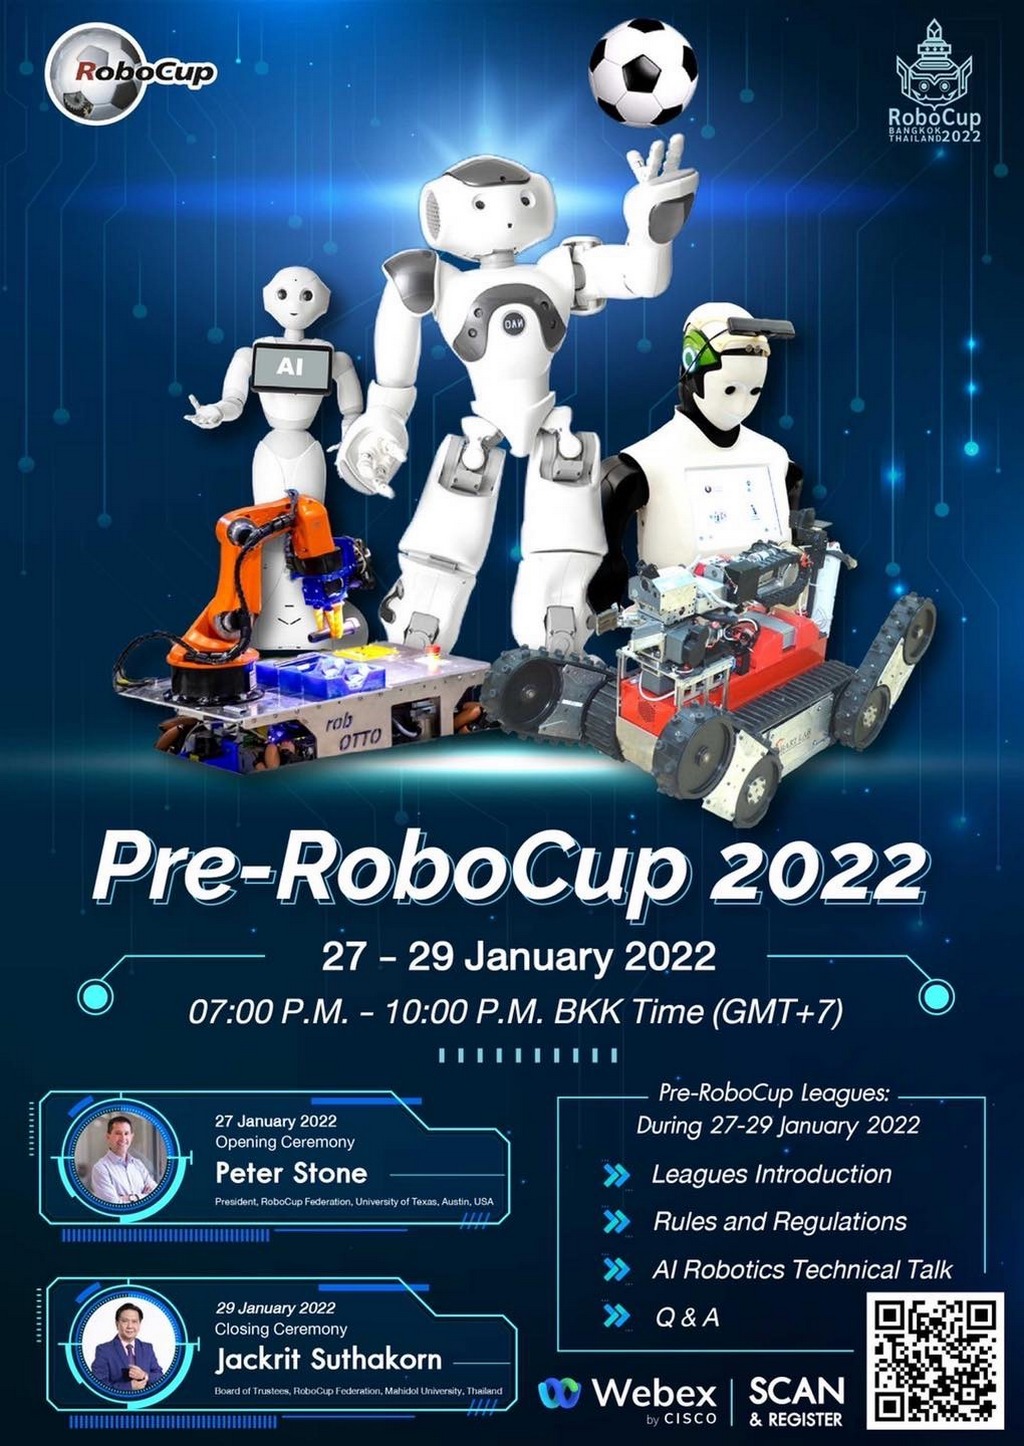 The PreRoboCup 2022 Seminar Introduced the World RoboCup 2022, The